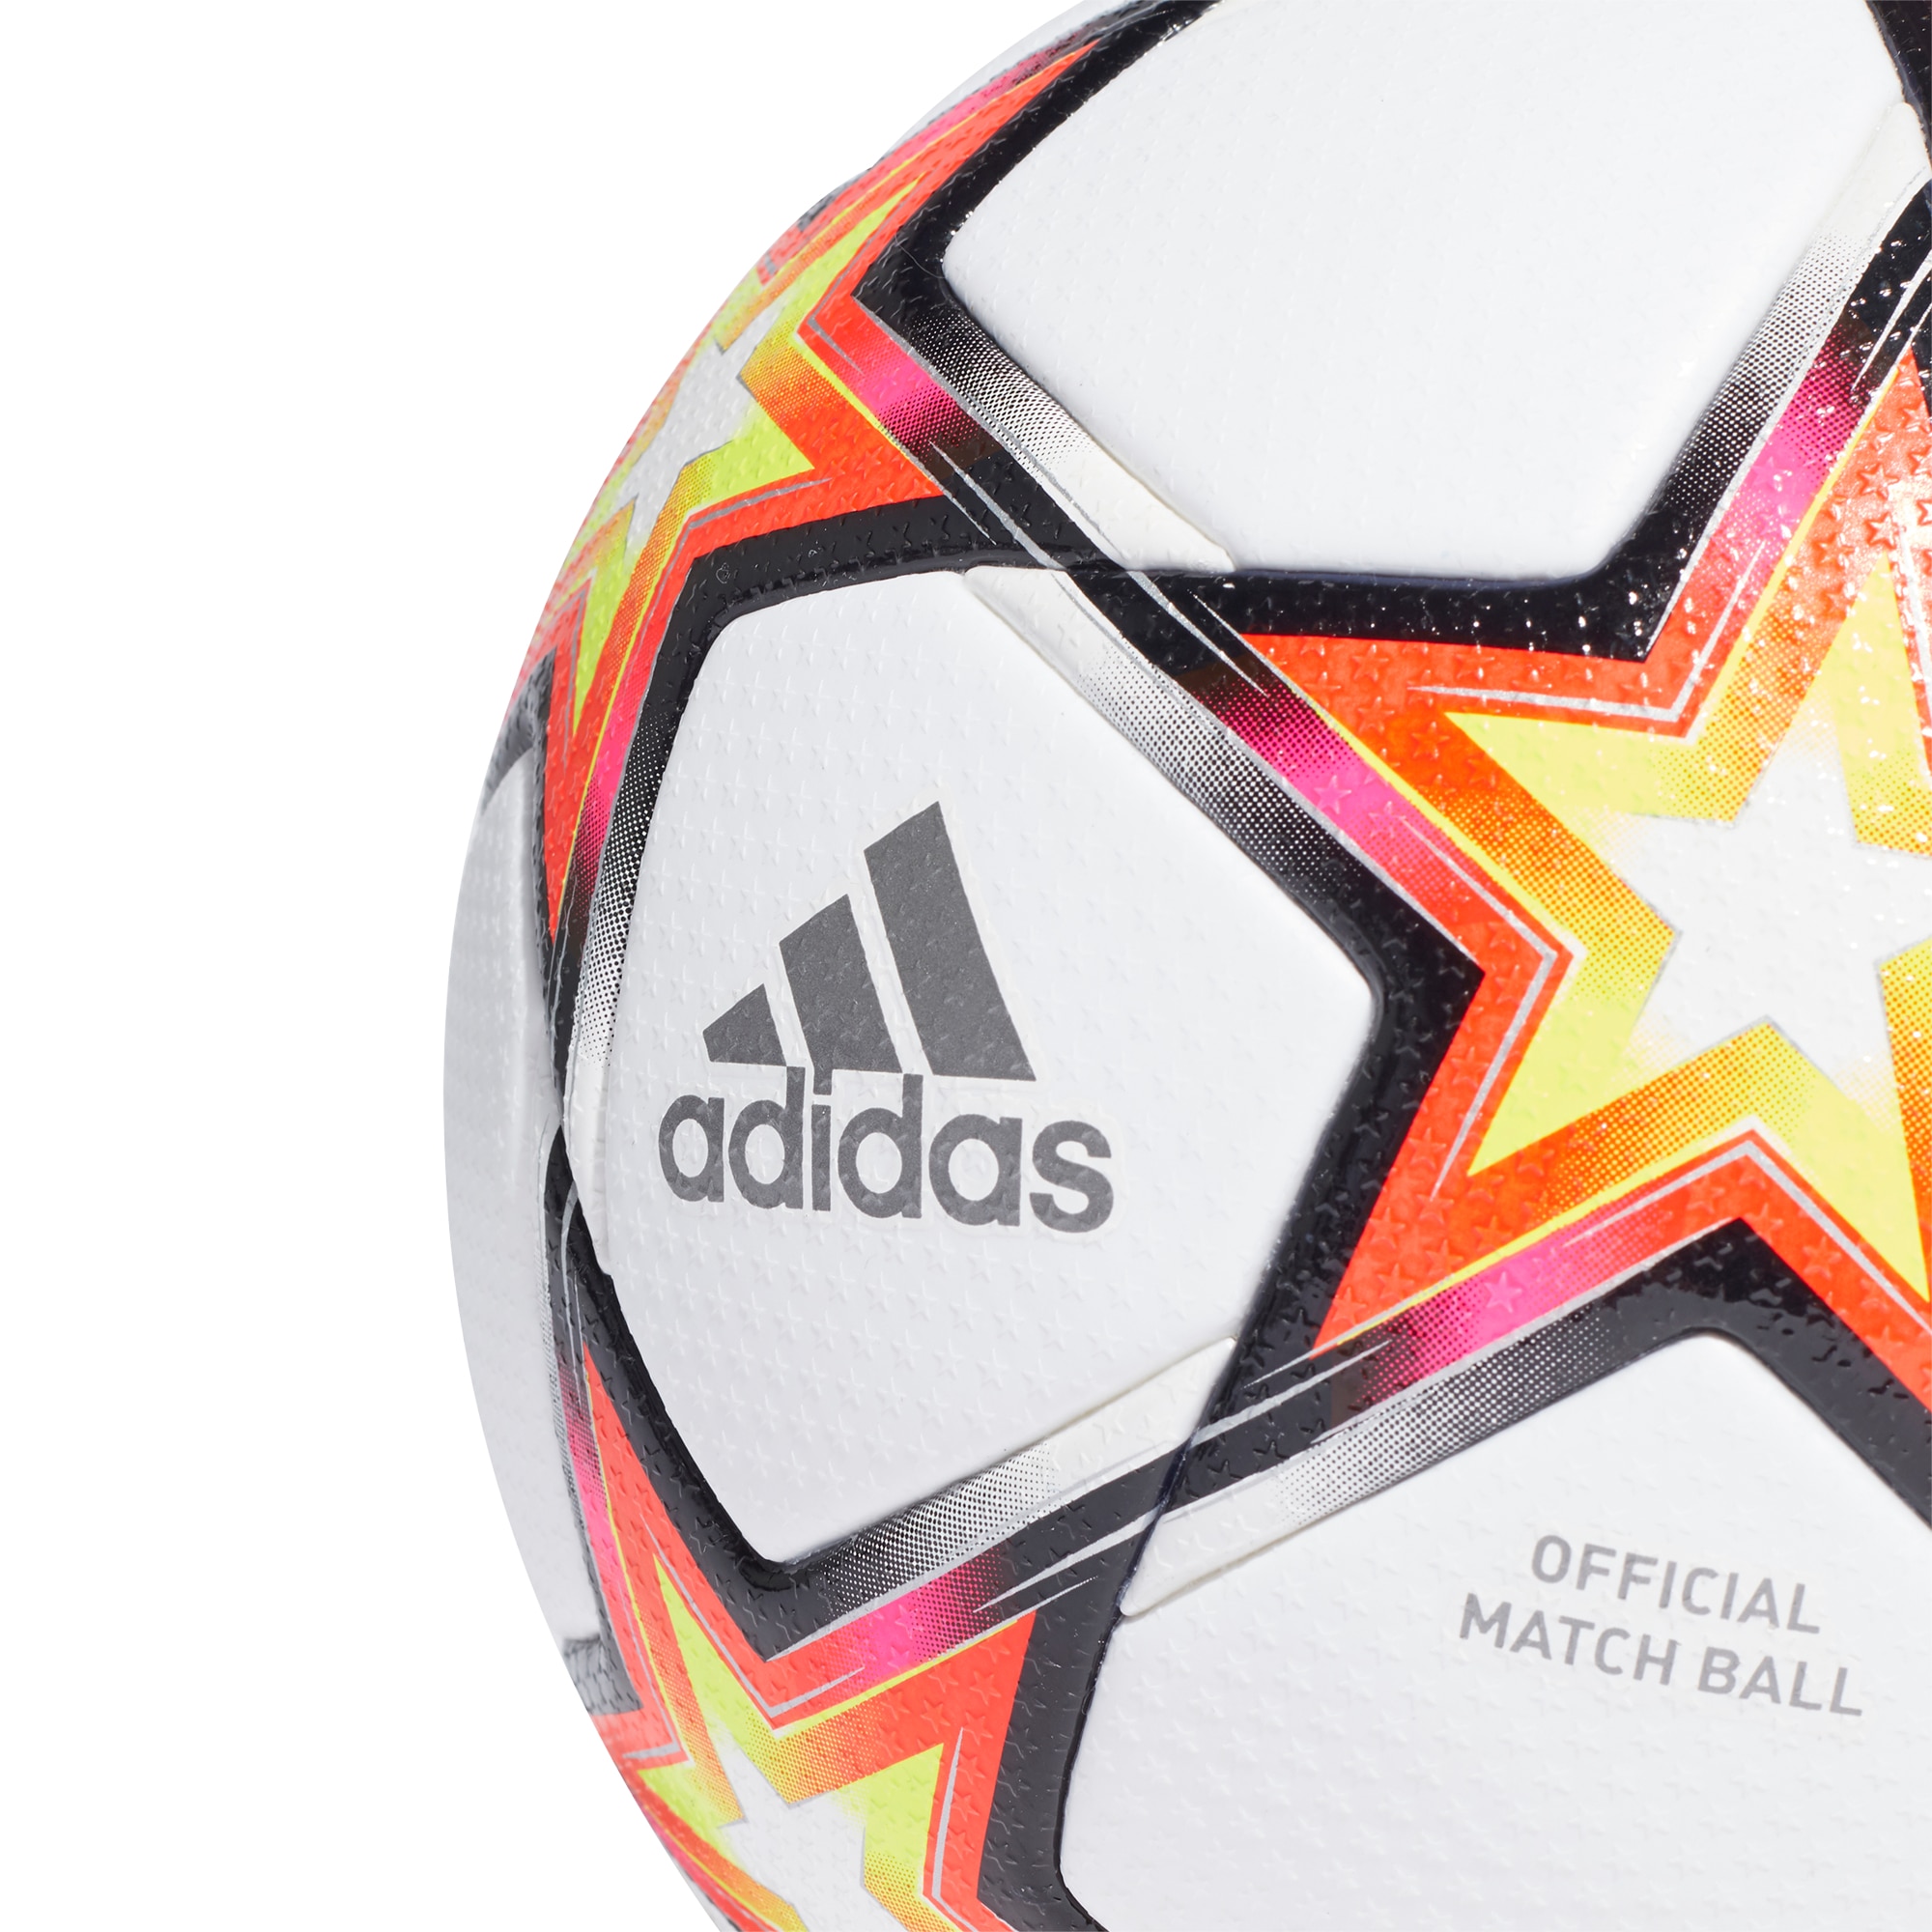 Adidas Champions League Offisiell Matchball Fotball 21/22